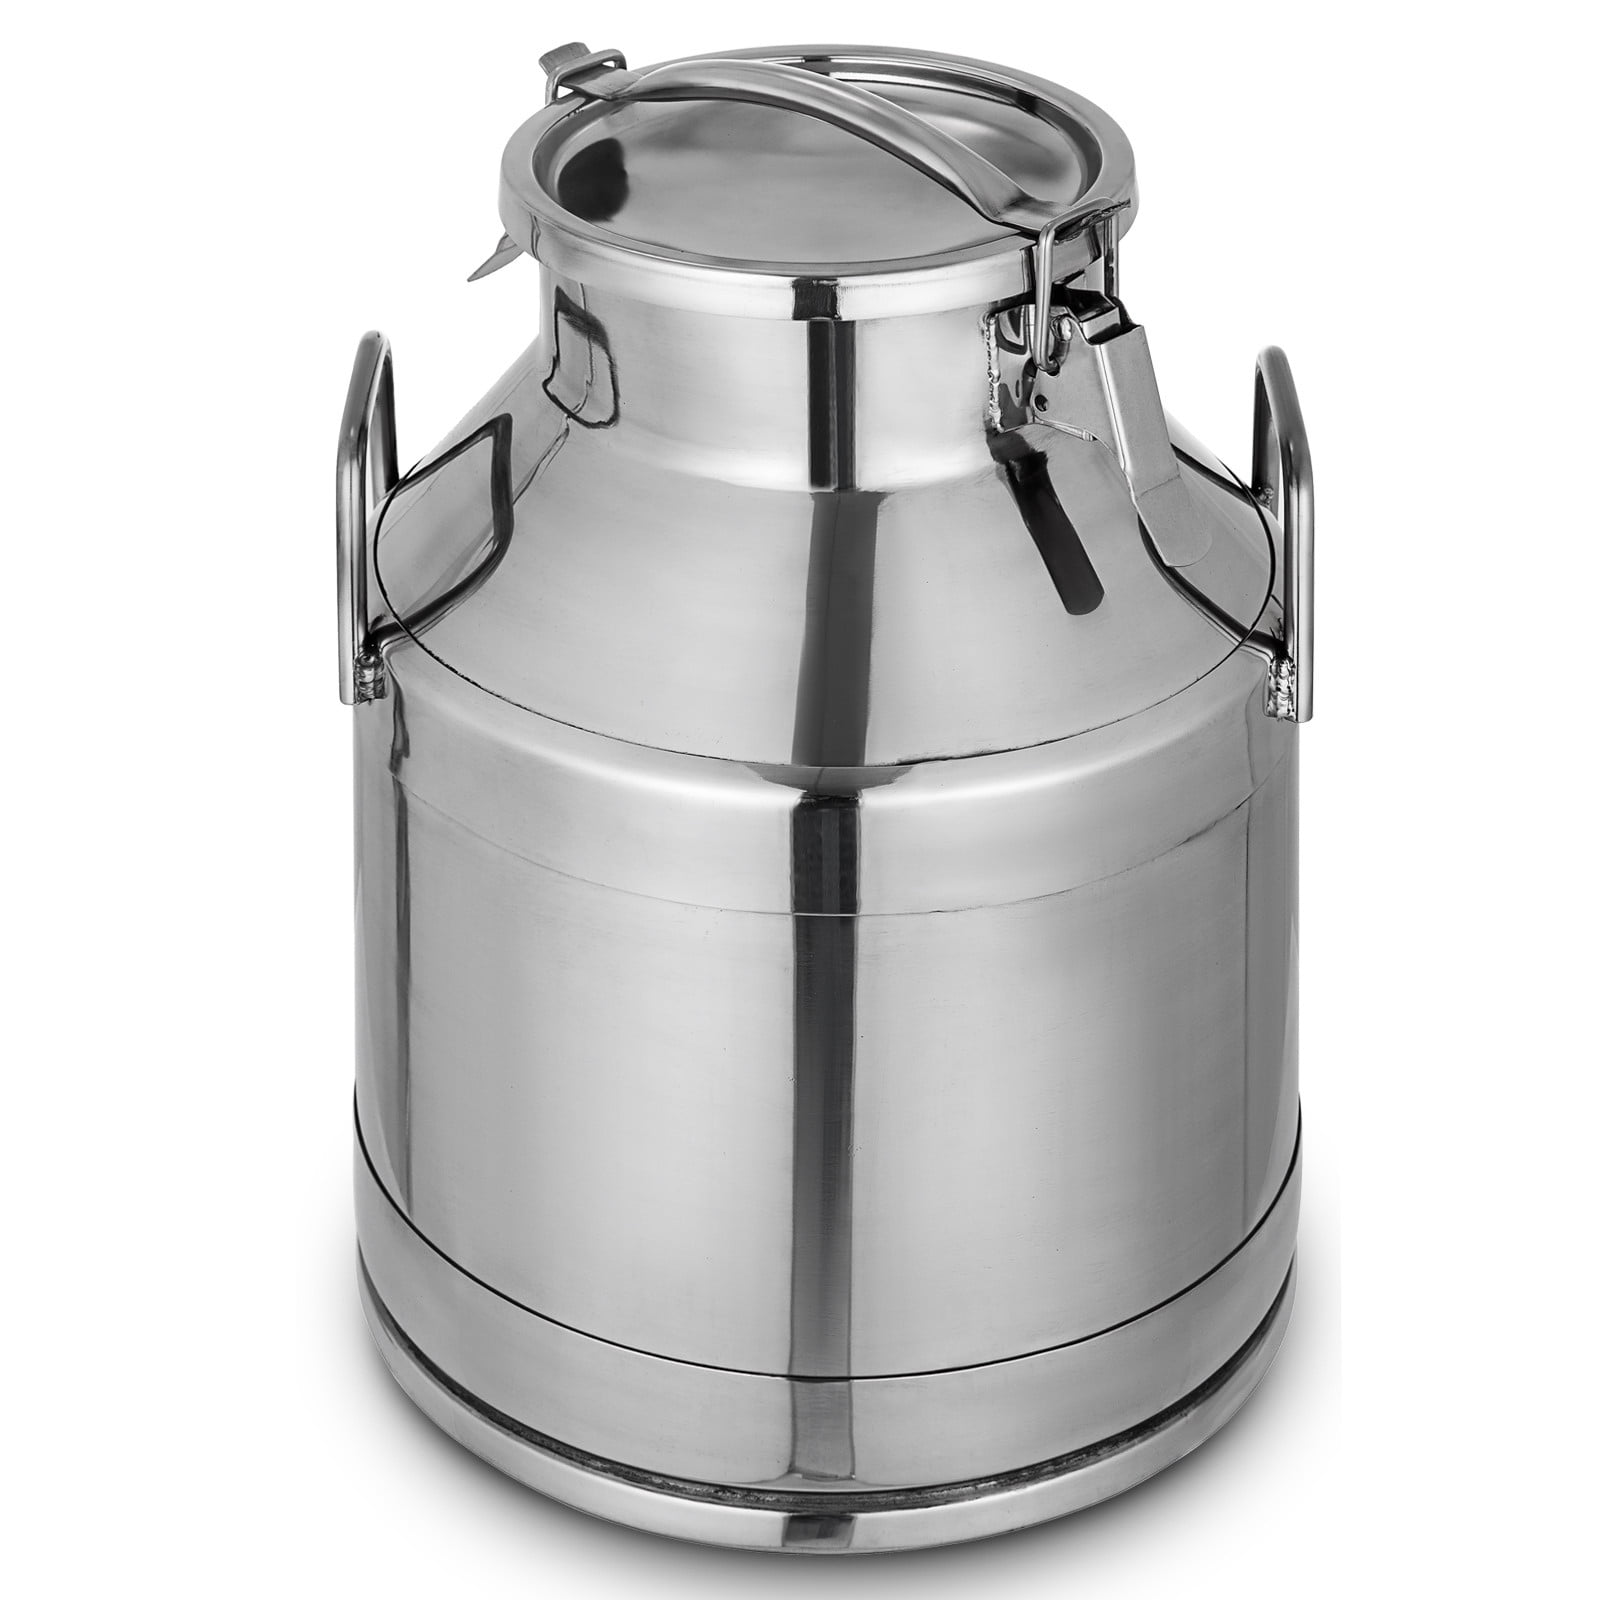 BestEquip Stainless Steel Milk Can 20 Liter Milk bucket Wine Pail 20 Gallon Stainless Steel Milk Can